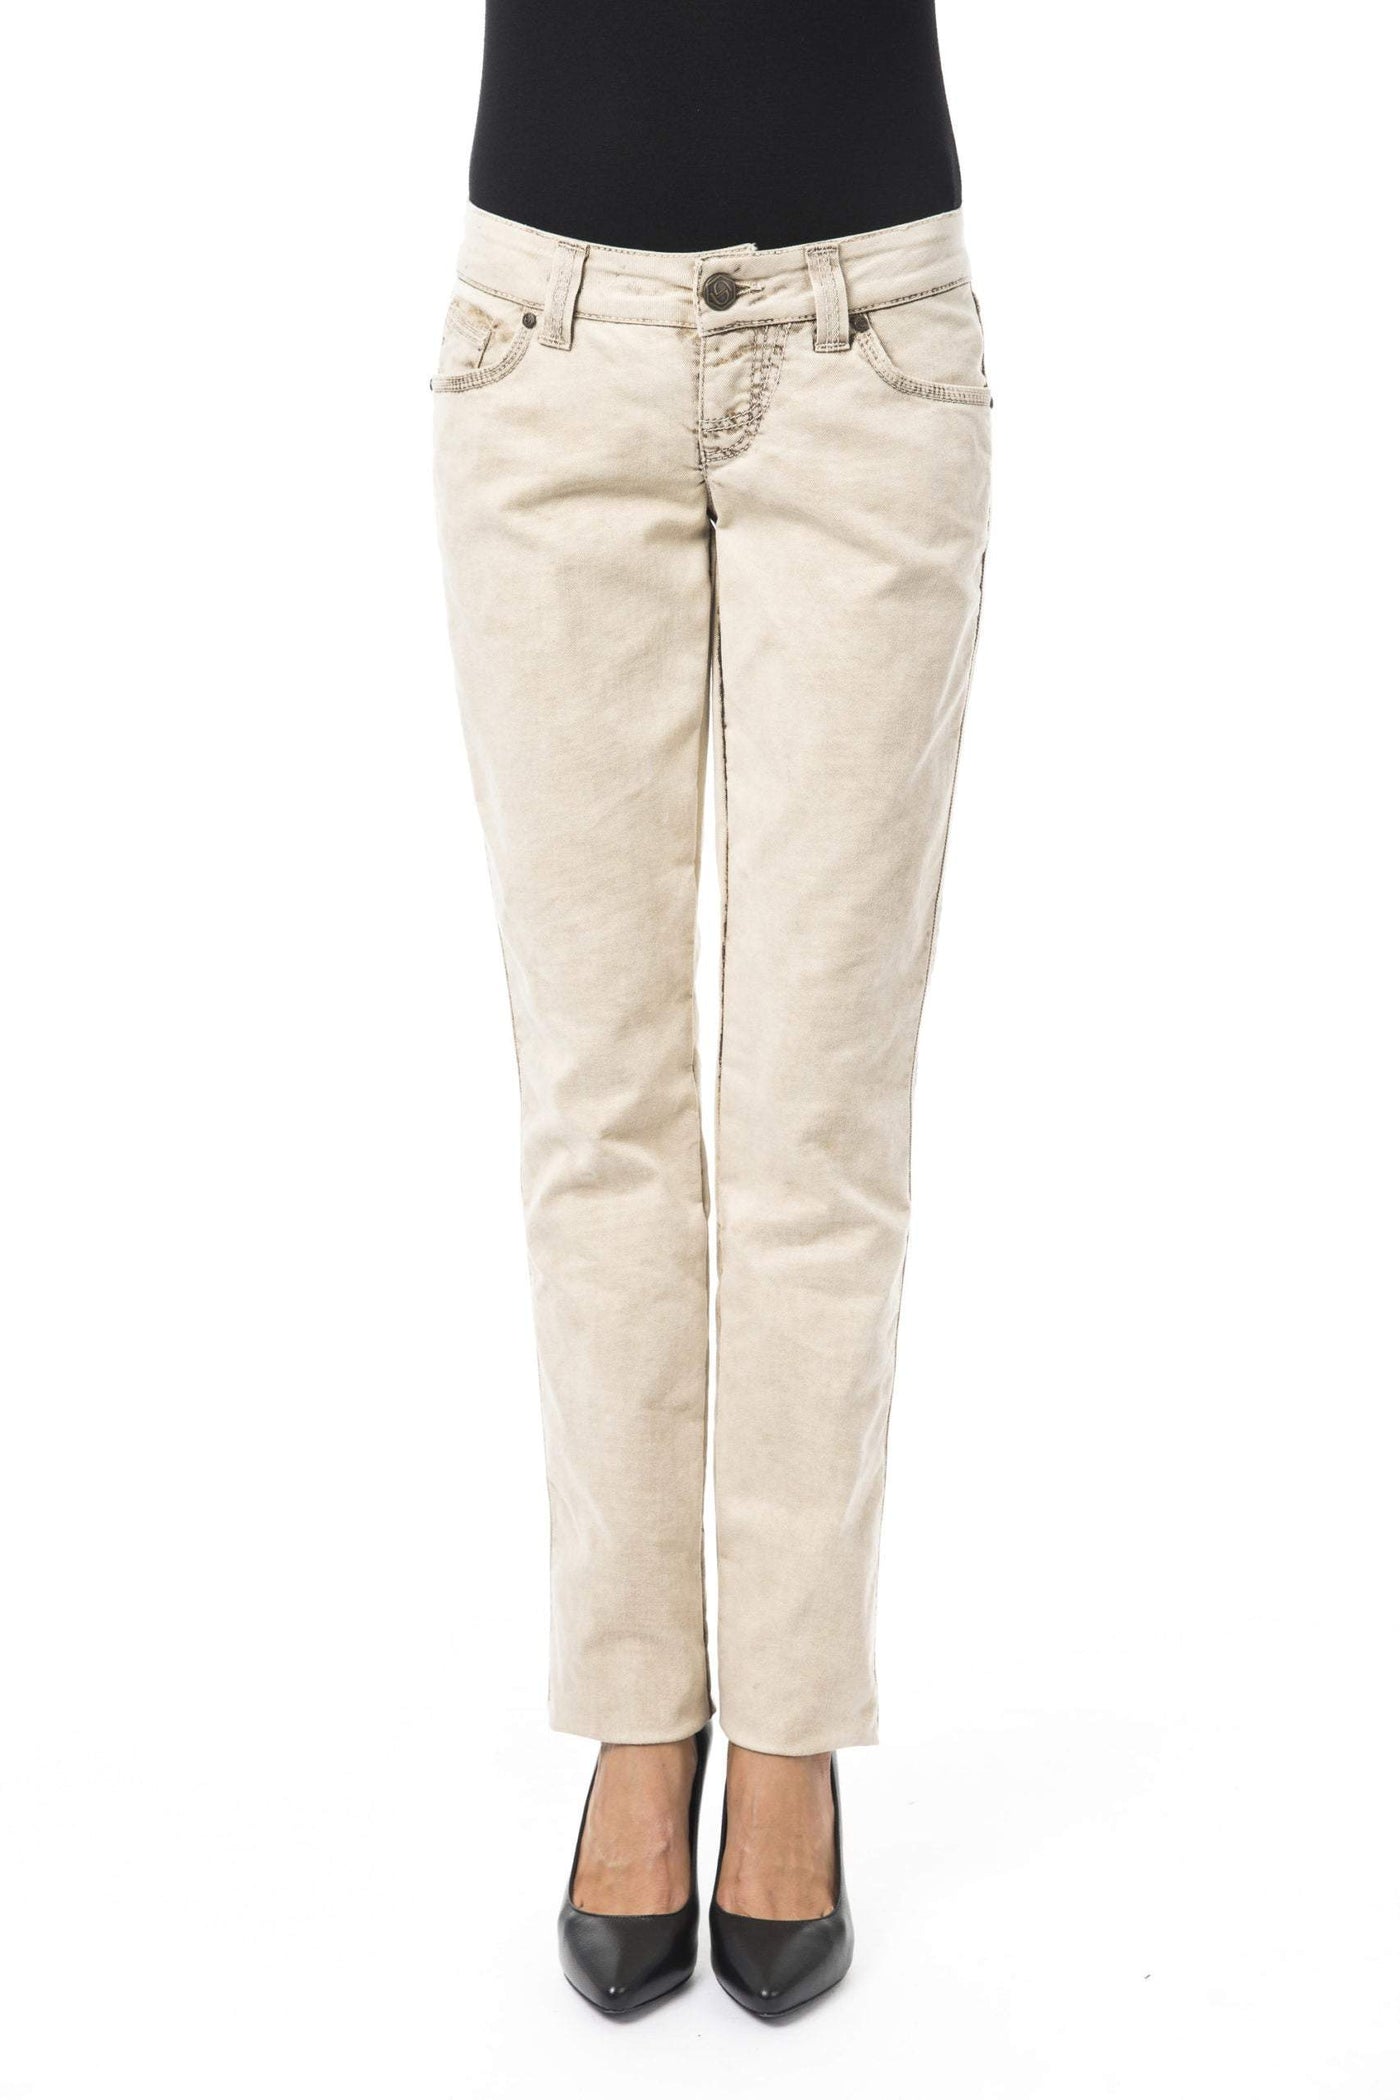 BYBLOS Beige Cotton Jeans & Pant Beige, BYBLOS, feed-1, Jeans & Pants - Women - Clothing, W26 | IT40, W30 | IT44 at SEYMAYKA